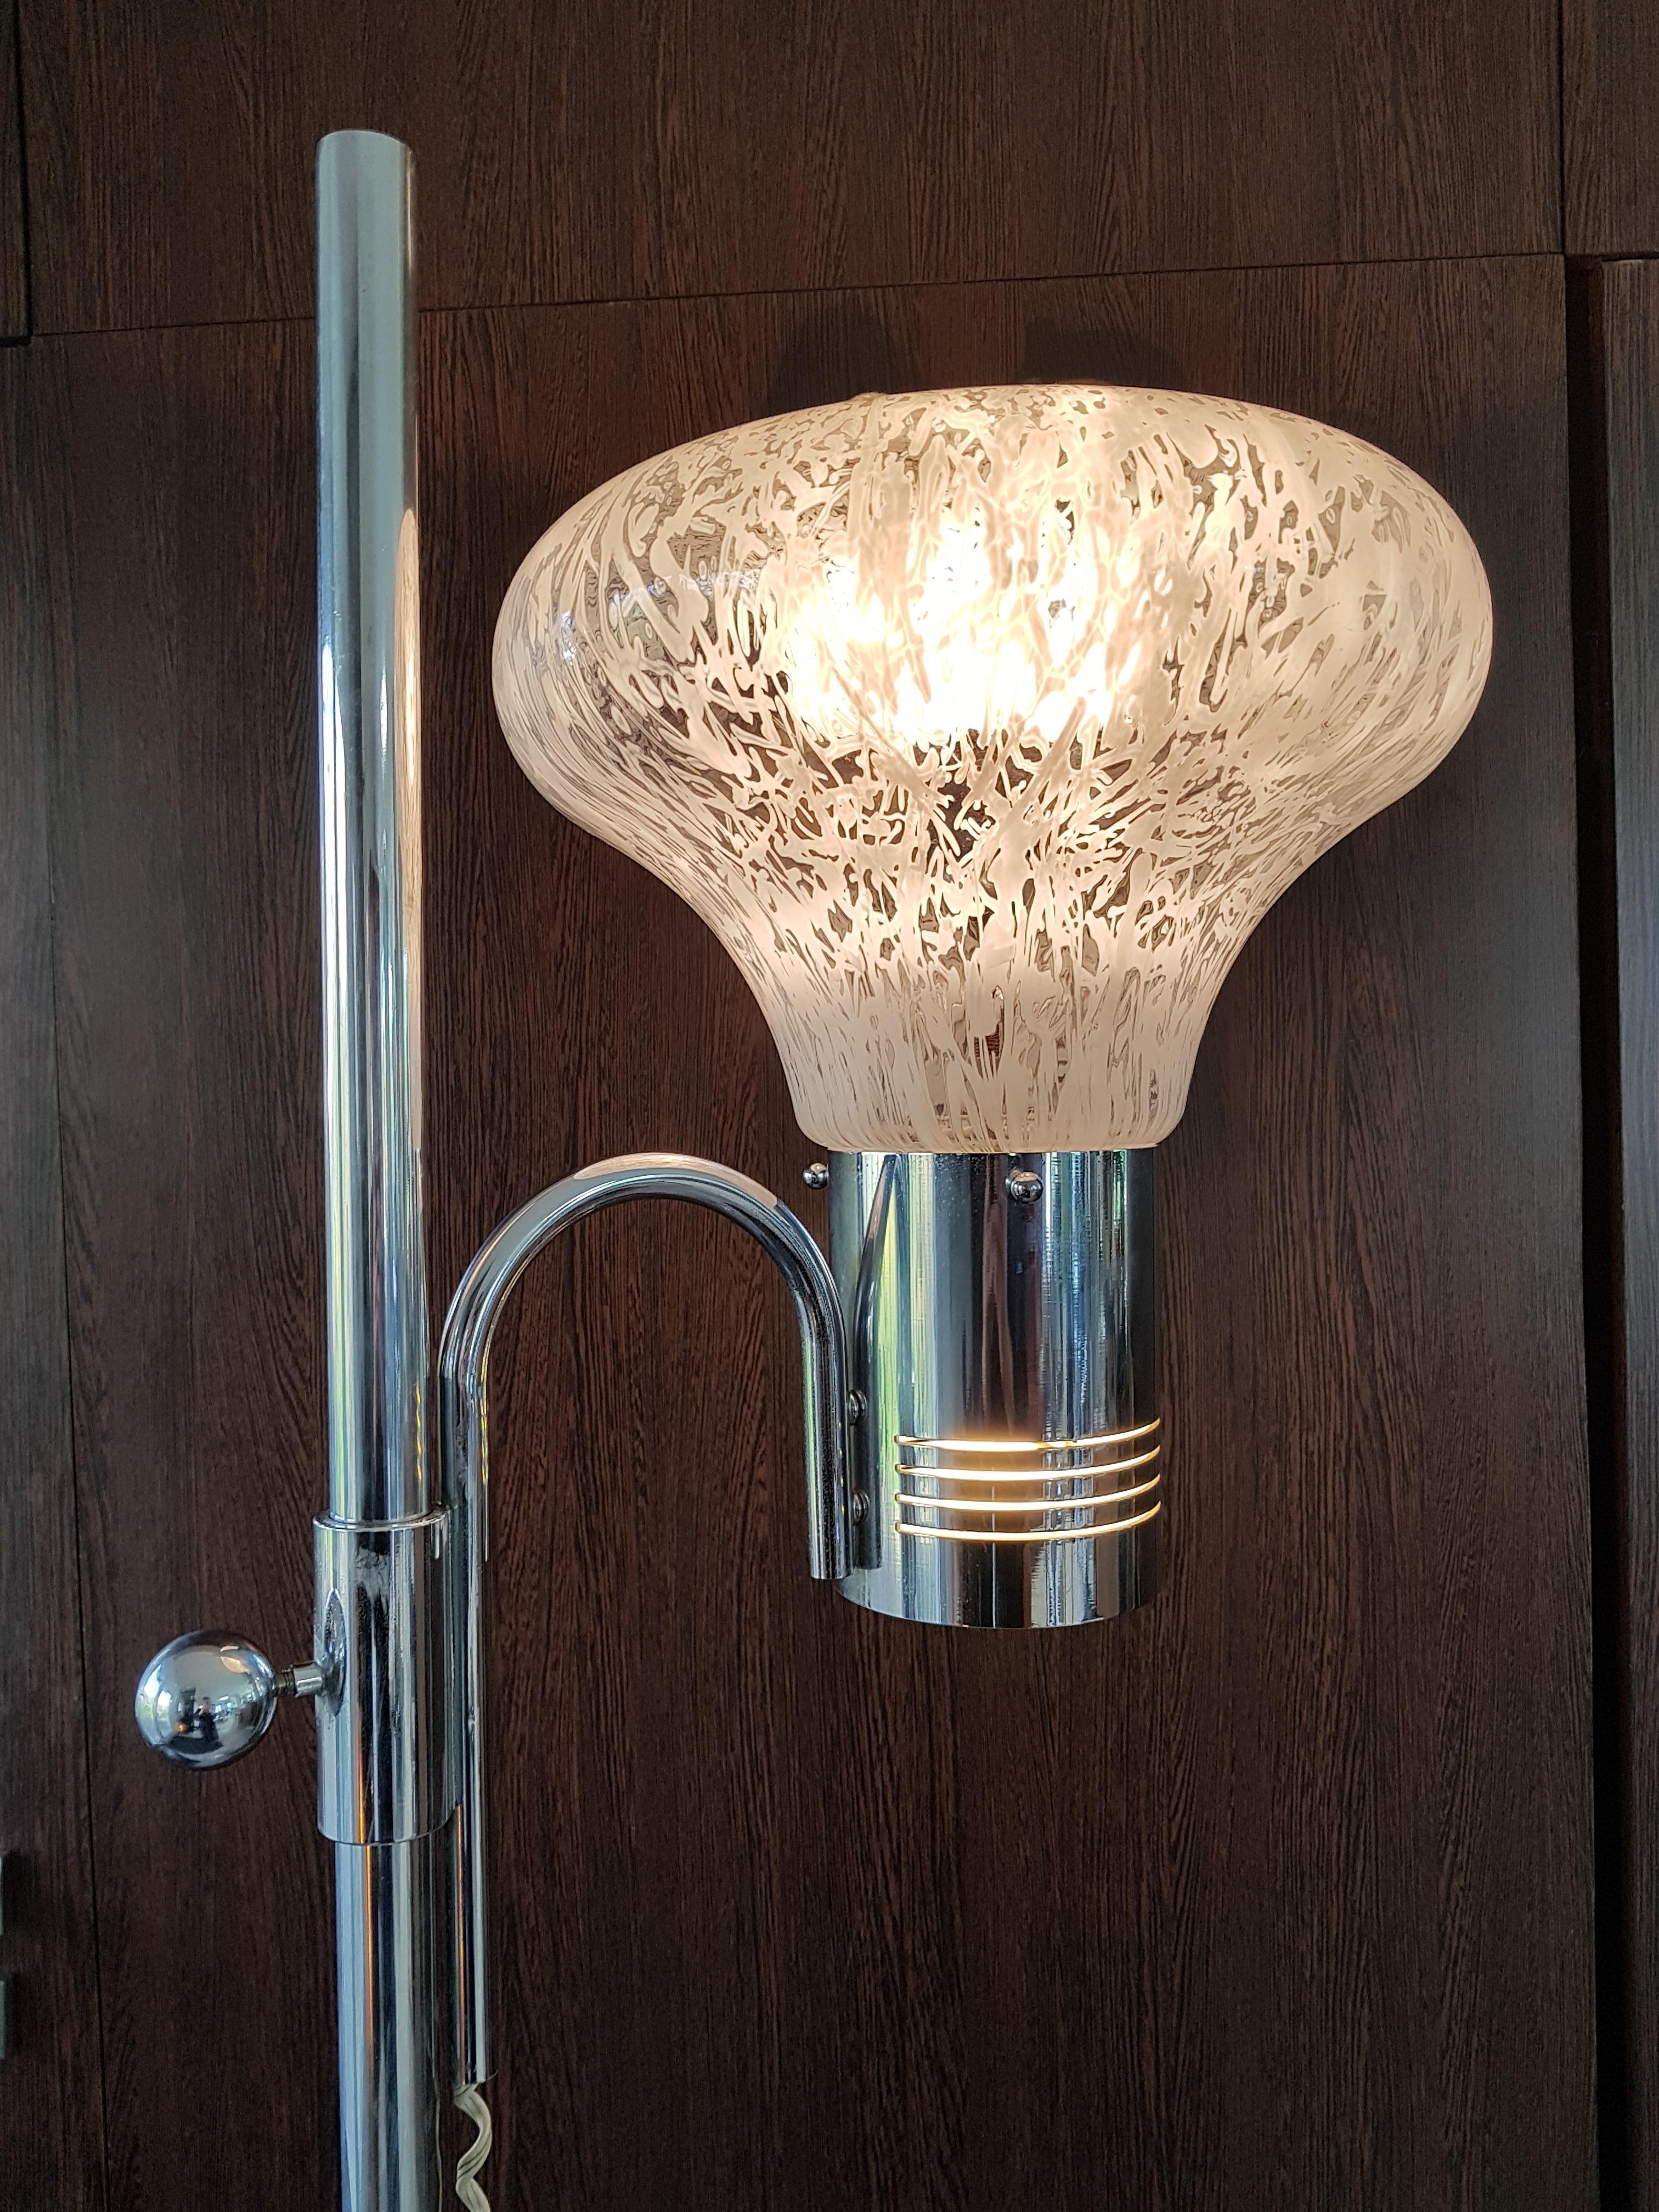 Stehlampe aus der Jahrhundertmitte, Carlo Nason für Mazzega, Italien, 1960.
Guter Vintage-Zustand.
Zwei Glühbirnen! Eine im Schatten, eine in der Fassung!